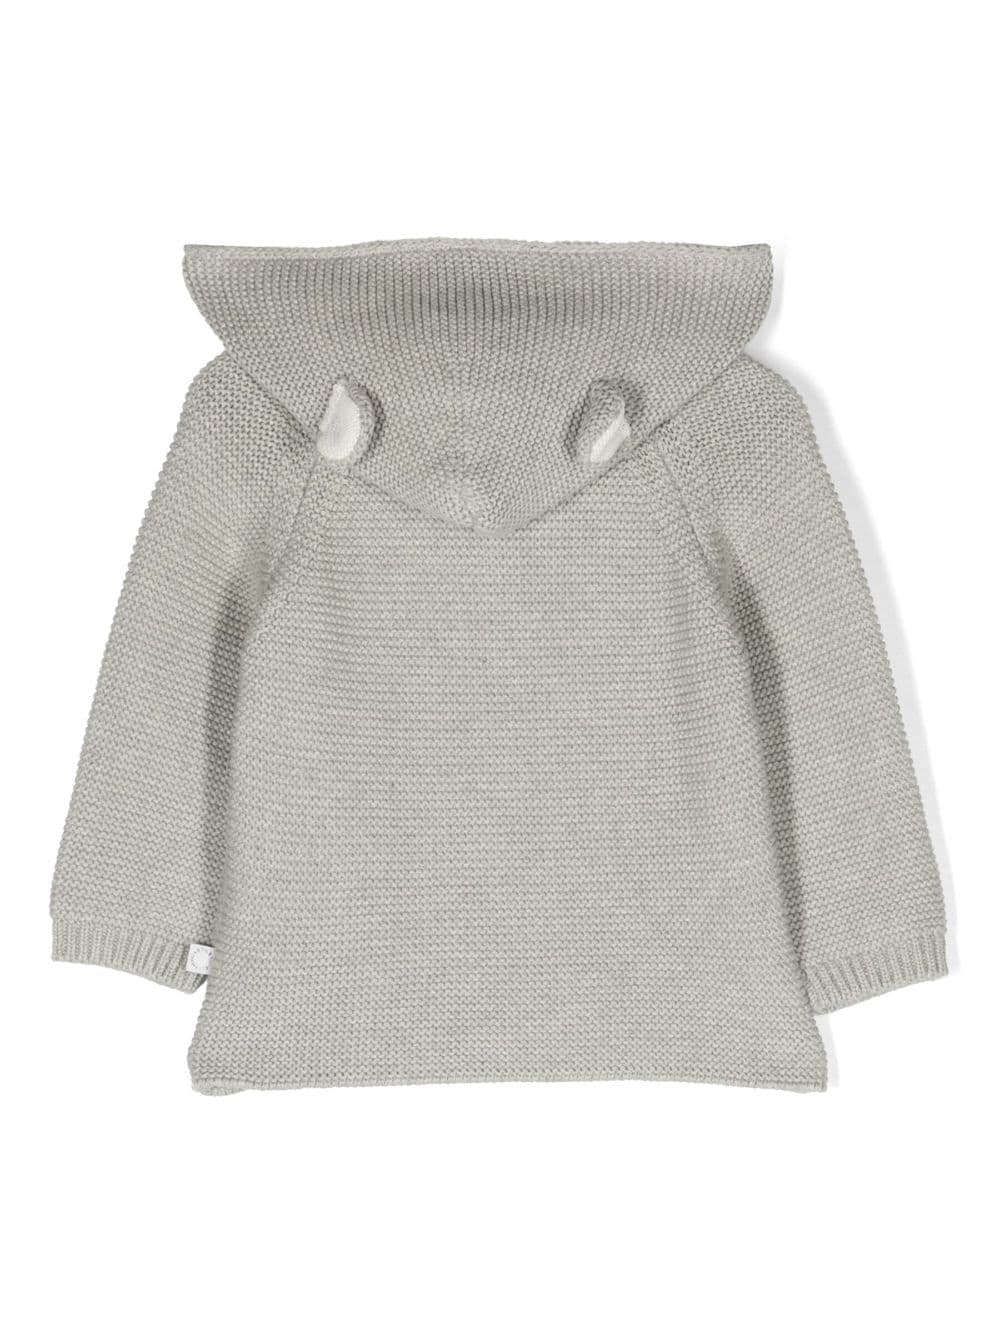 Stella McCartney Kids hooded sweater